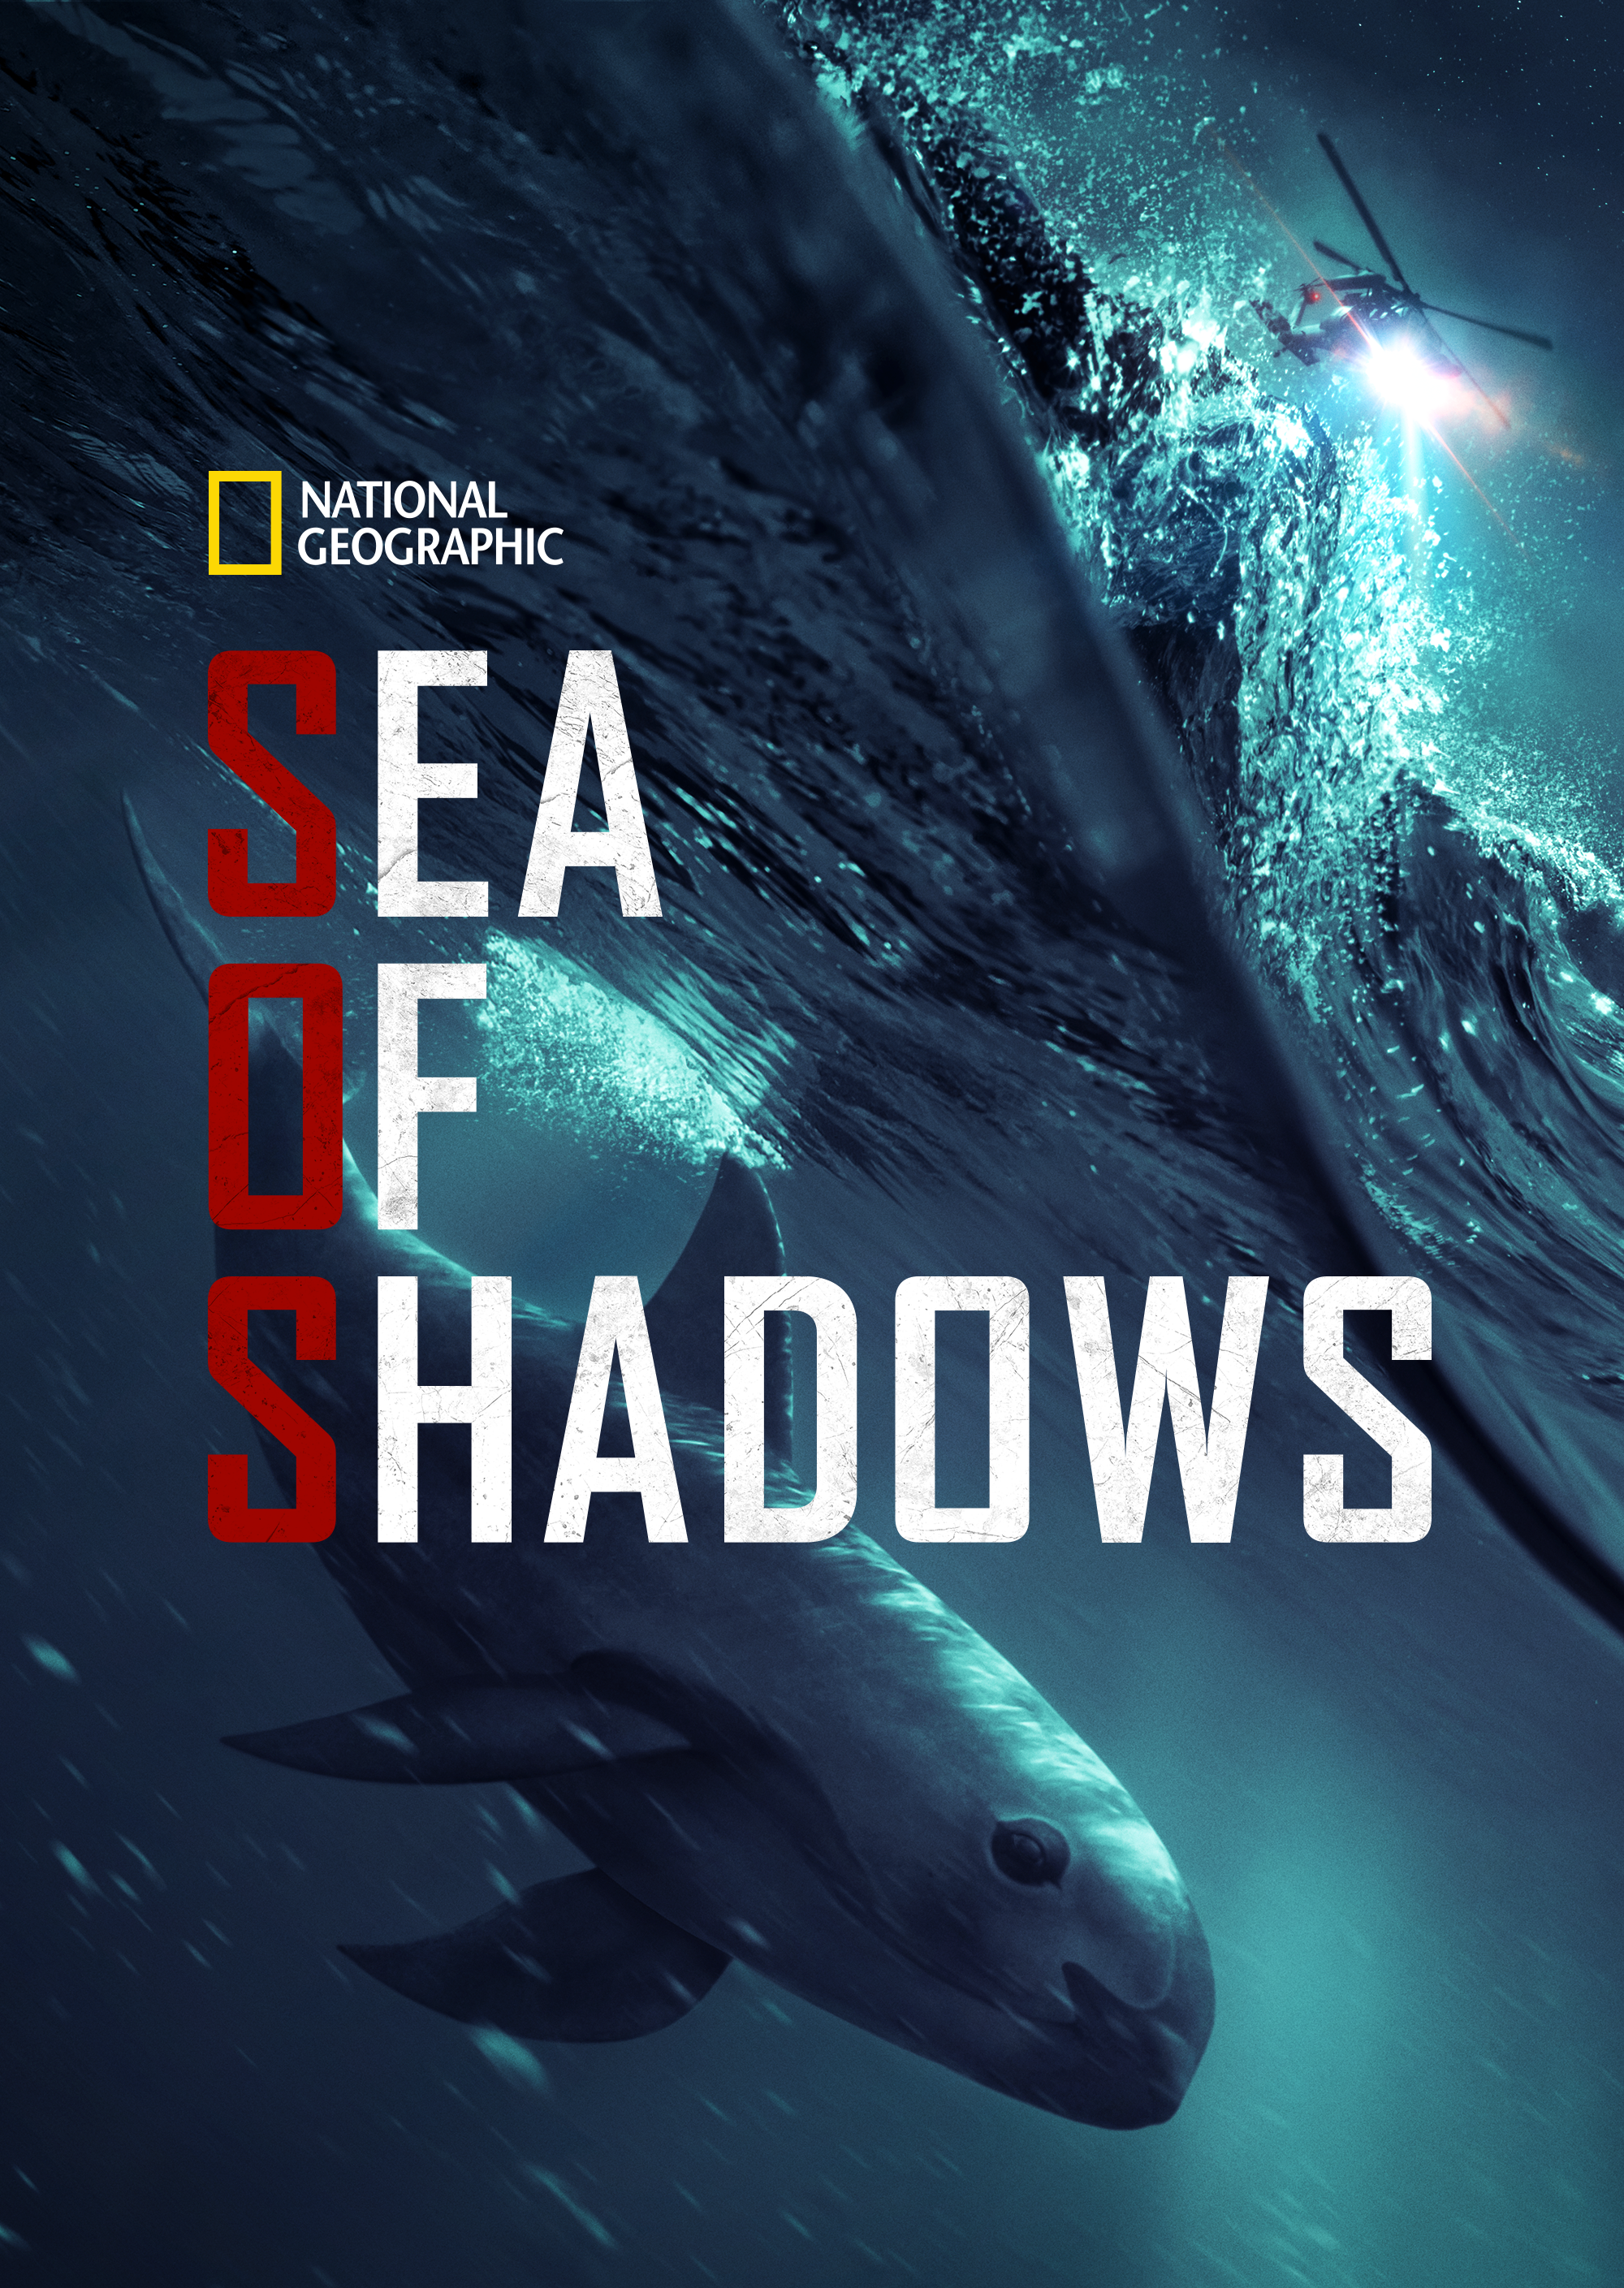 Sea of Shadows 2019